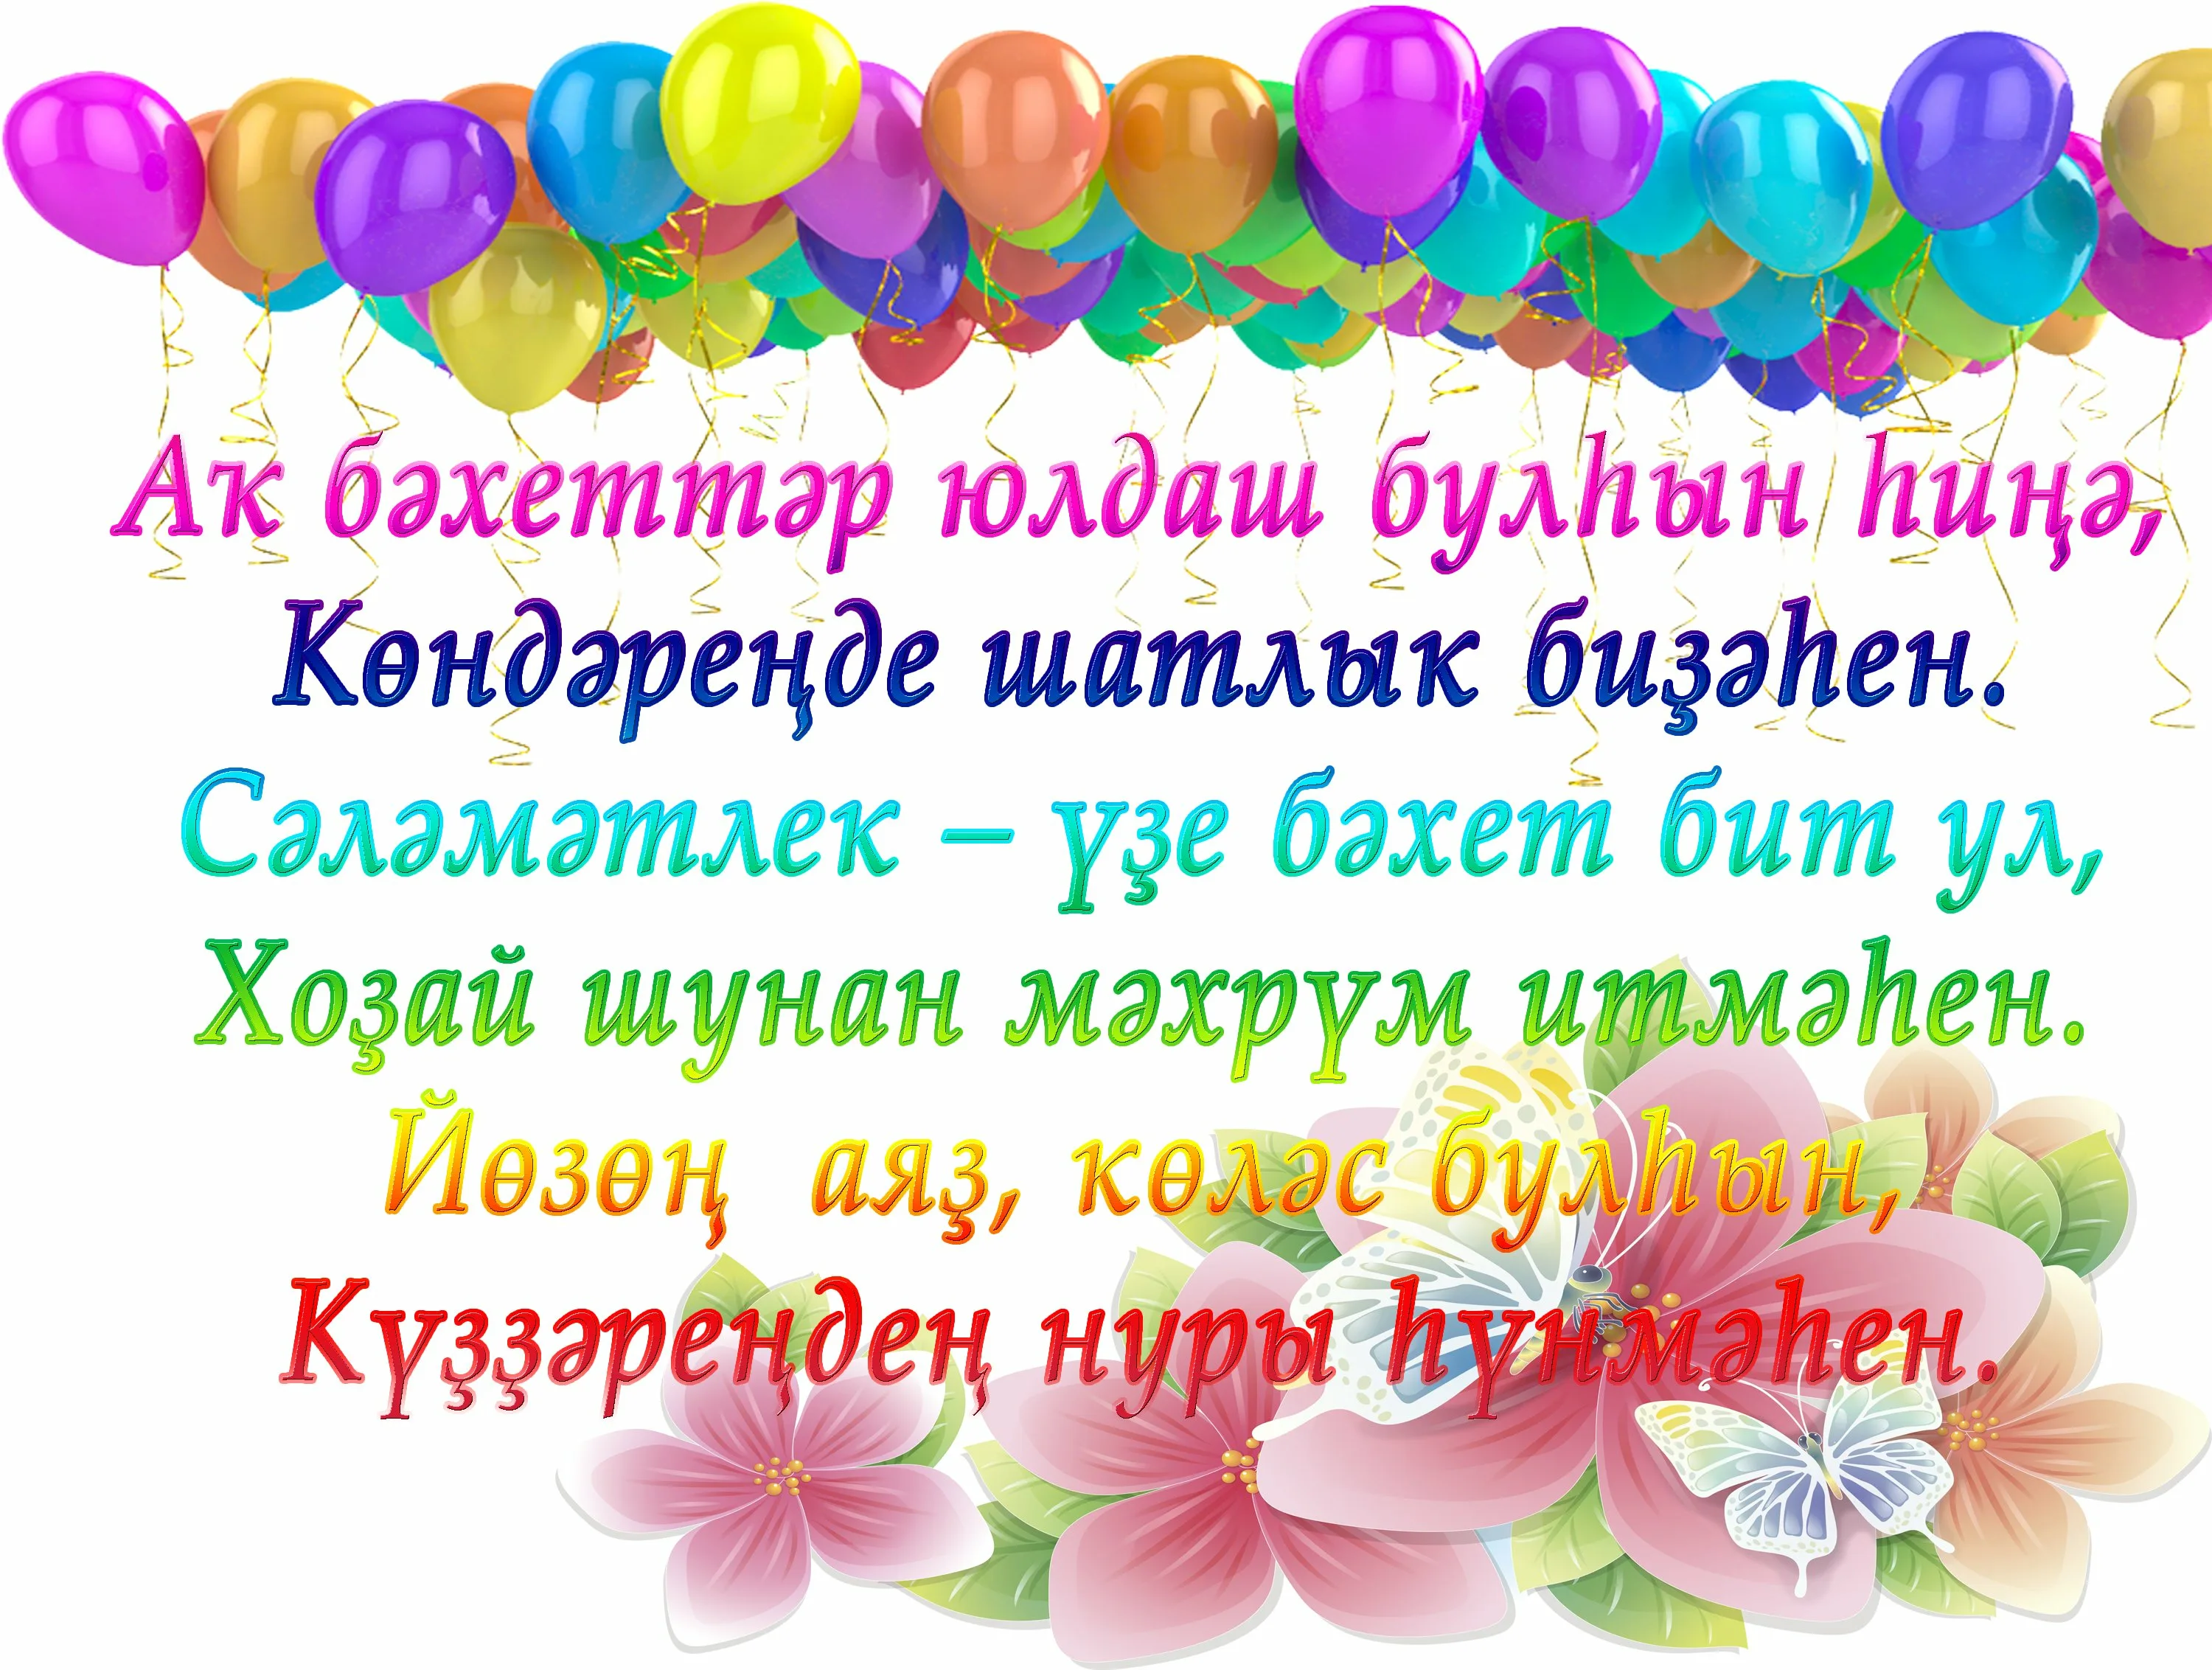 Поздравления с днем рождения на узбекском языке. Поздравления с днём рождения на башкирском. Поздравления с днём рождения на башкирском языке. Поздравления с днём на башкирском языке. Поздравление с юбилеем на башкирском языке.